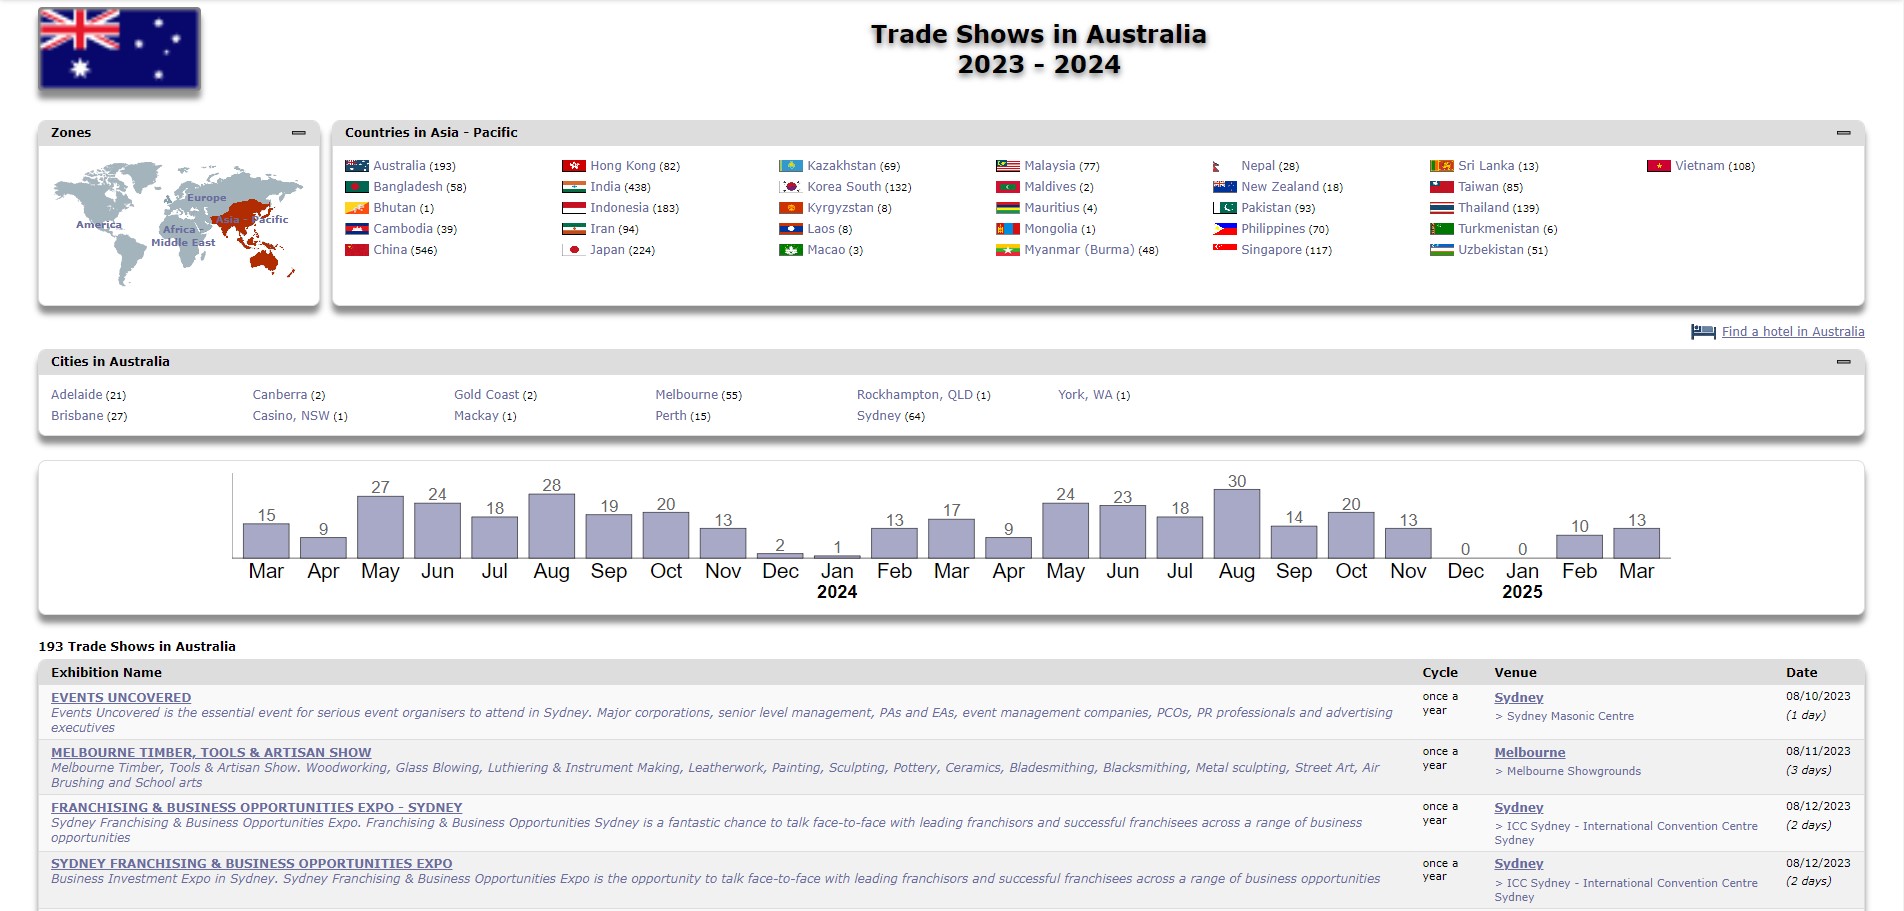 Trade shows in Australia 2023 - 2024